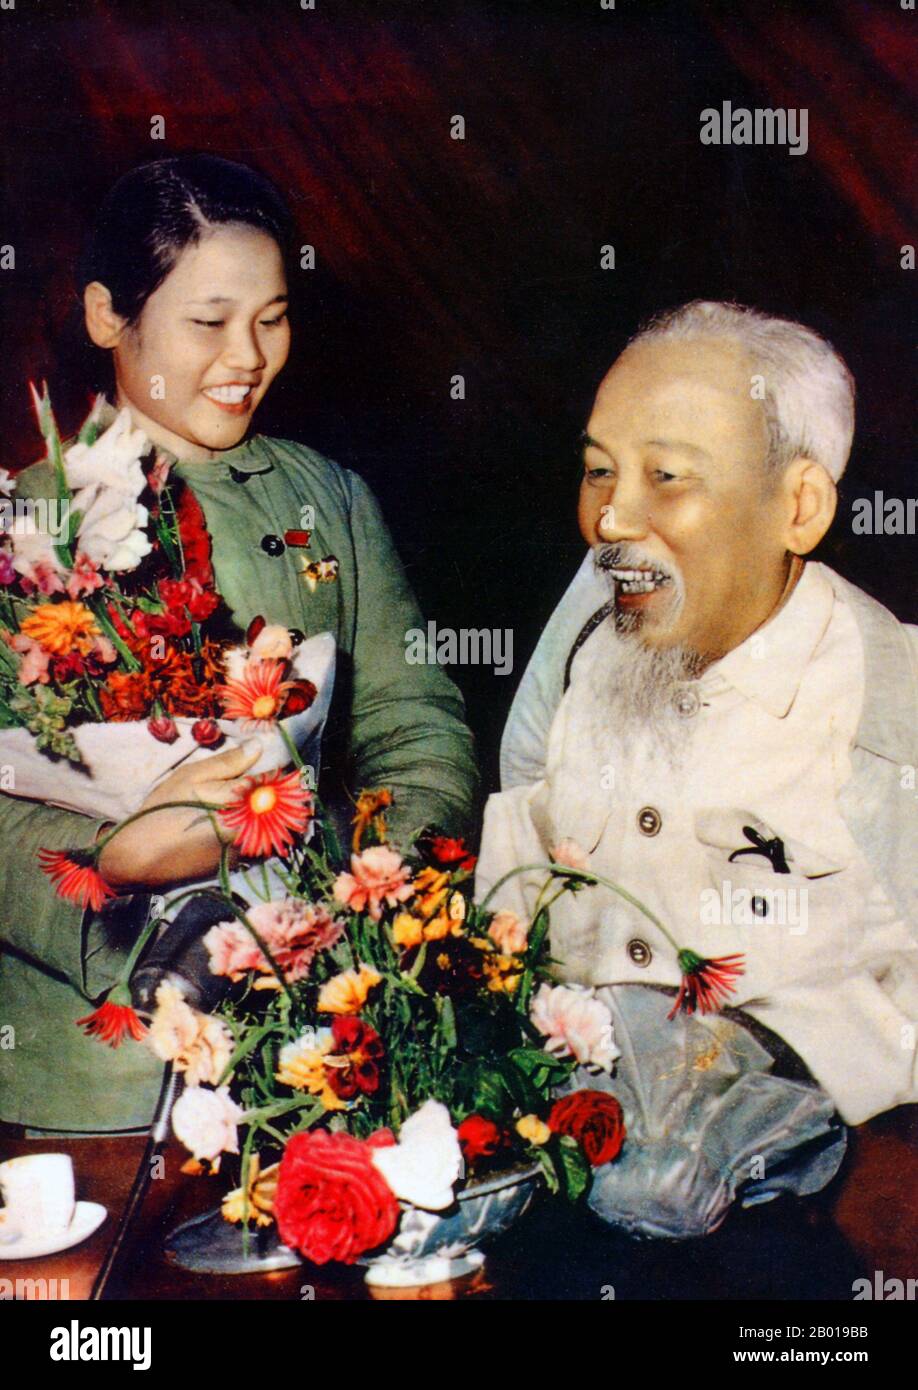 Vietnam: Président Ho Chi Minh (19 mai 1890 - 3 septembre 1969) au Congrès des jeunes volontaires pour la guerre de résistance patriotique contre l'agression des États-Unis, 1967. Hồ Chí Minh, né Nguyễn Sinh Cung et également connu sous le nom de Nguyễn Ái Quốc était un leader communiste vietnamien révolutionnaire qui était premier ministre (1946-1955) et président (1945-1969) de la République démocratique du Vietnam (Nord Vietnam). Il a formé la République démocratique du Vietnam et a dirigé le Viet Cong pendant la guerre du Vietnam jusqu'à sa mort. Banque D'Images